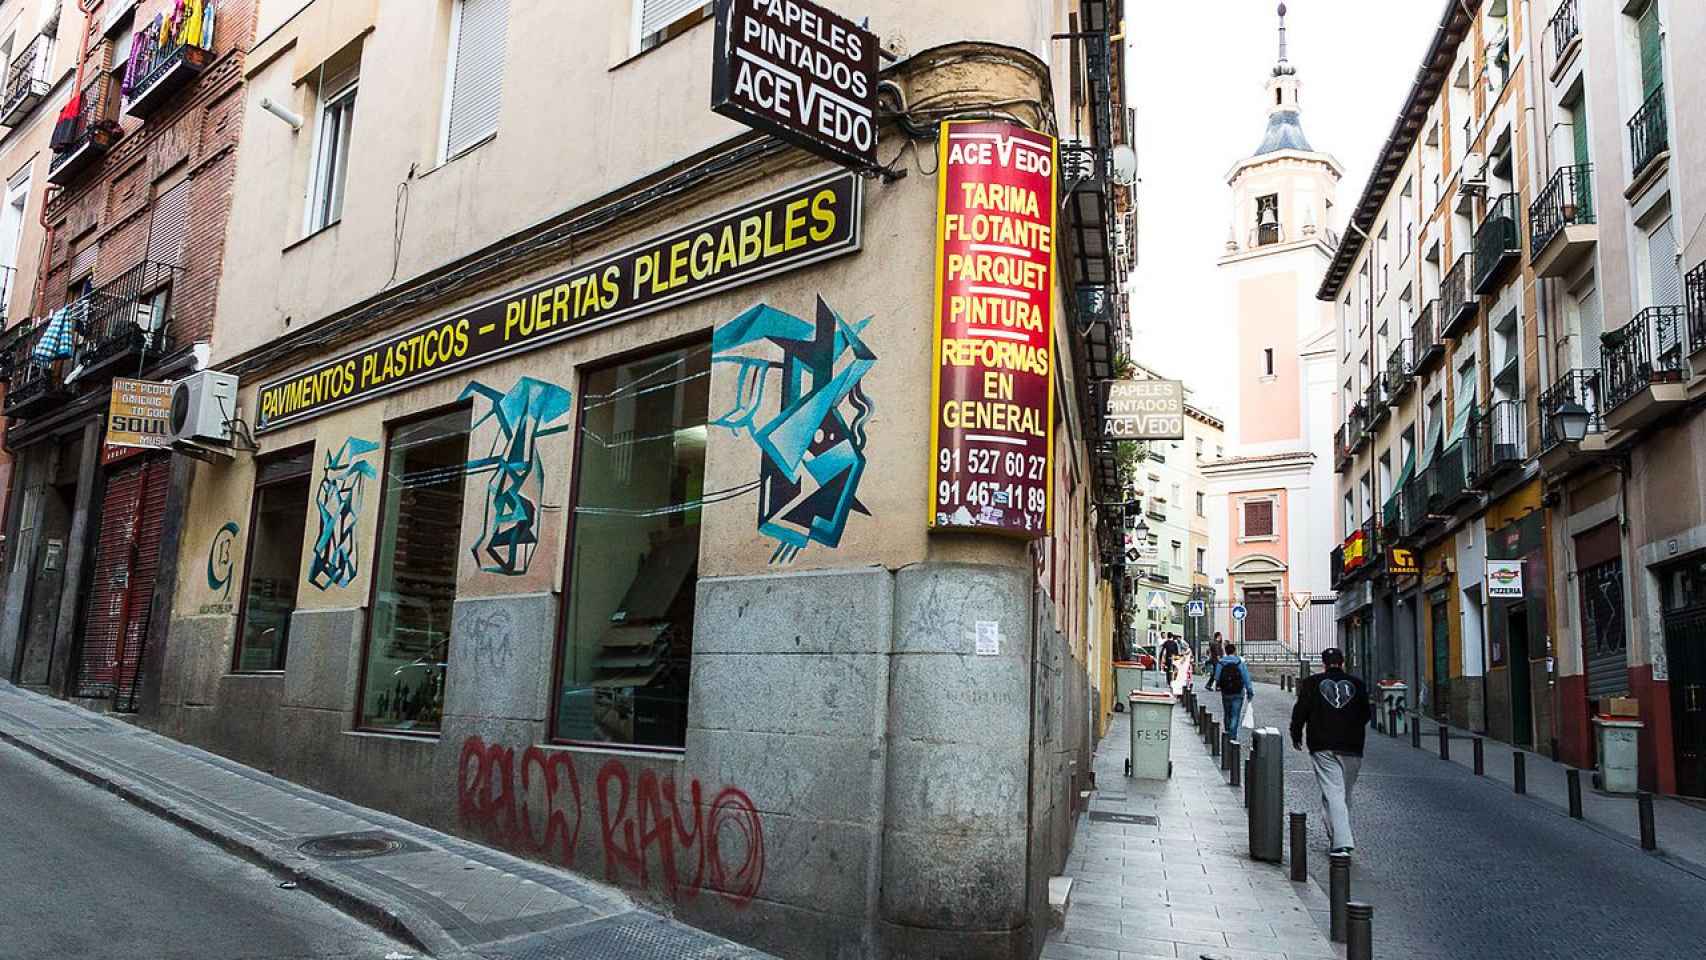 La calle de Madrid con el nombre más corto: solo tiene 2 letras.